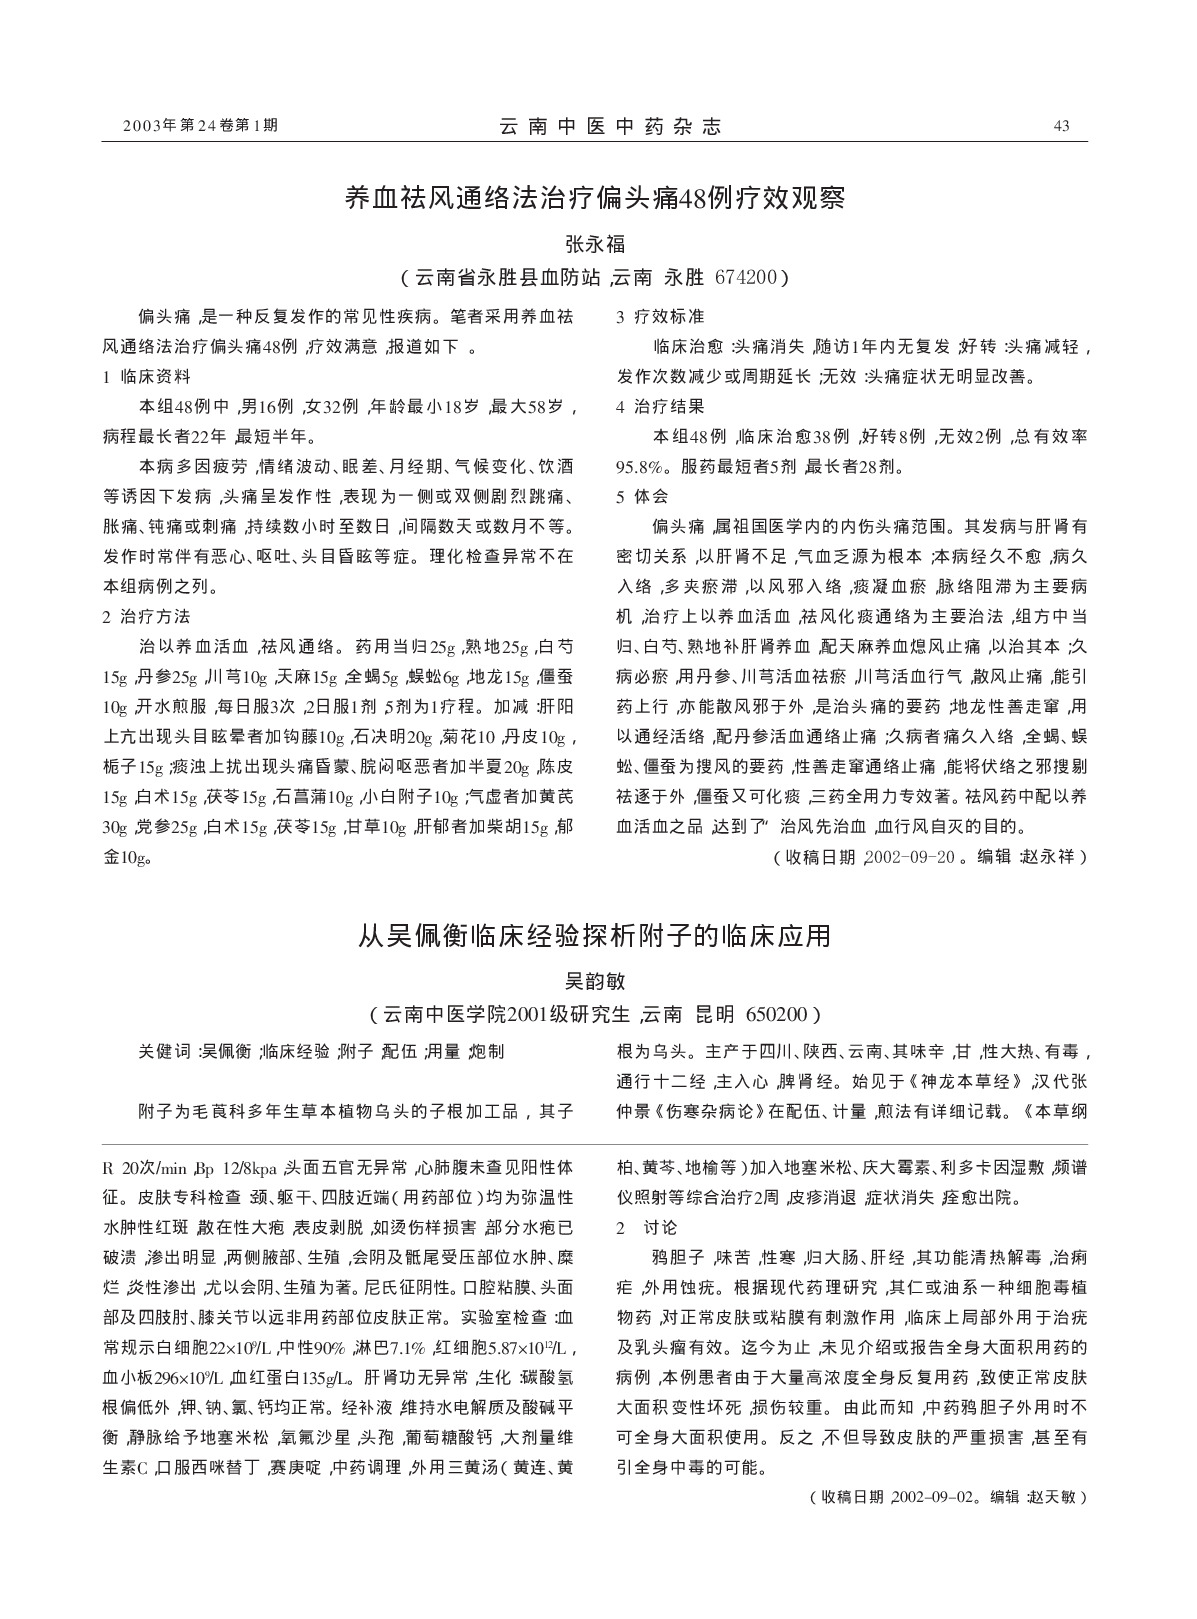 从吴佩衡临床经验探析附子的临床应用.PDF